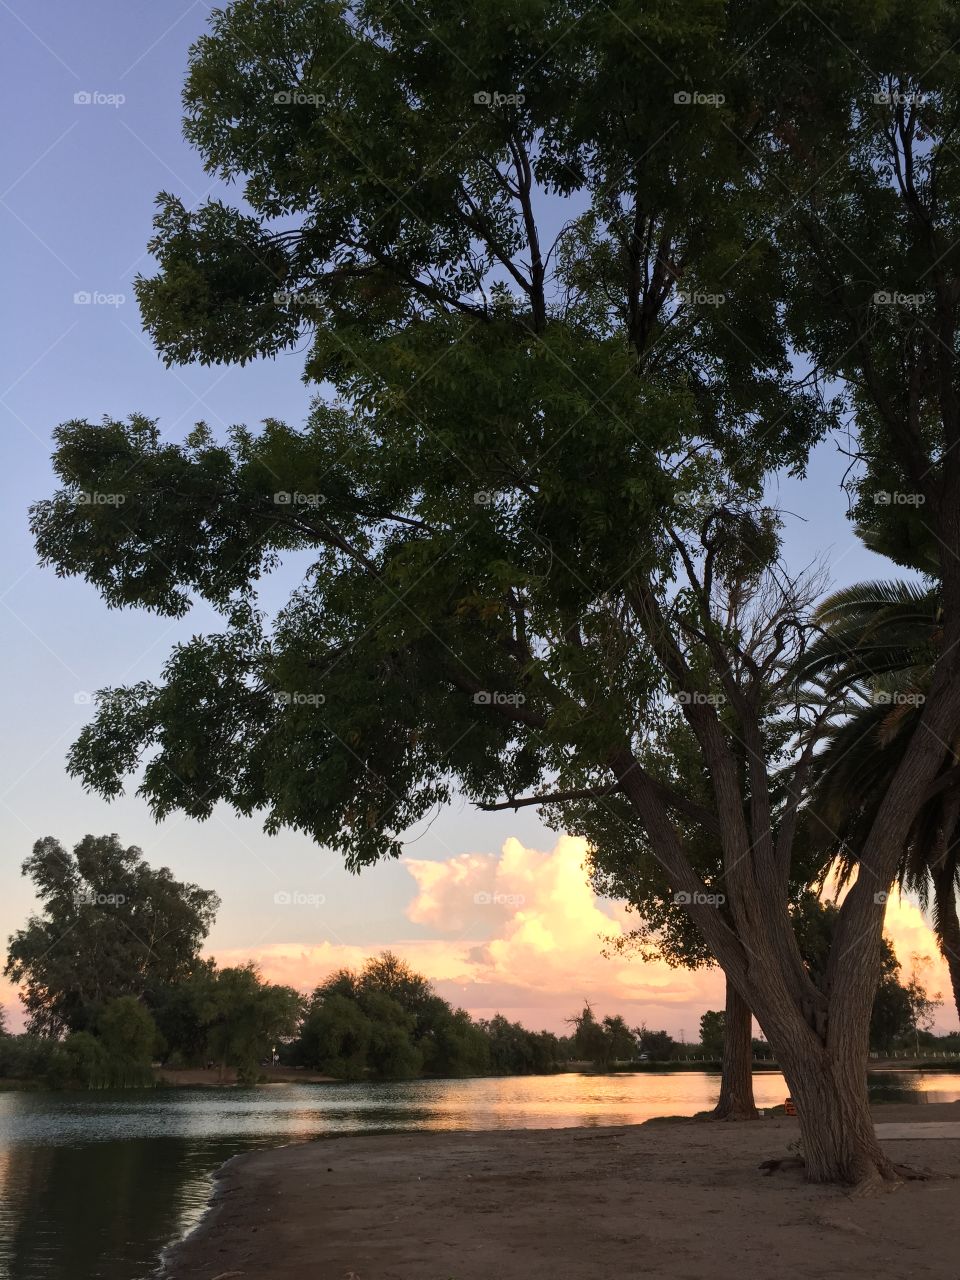 Dusk on the lake with large tree